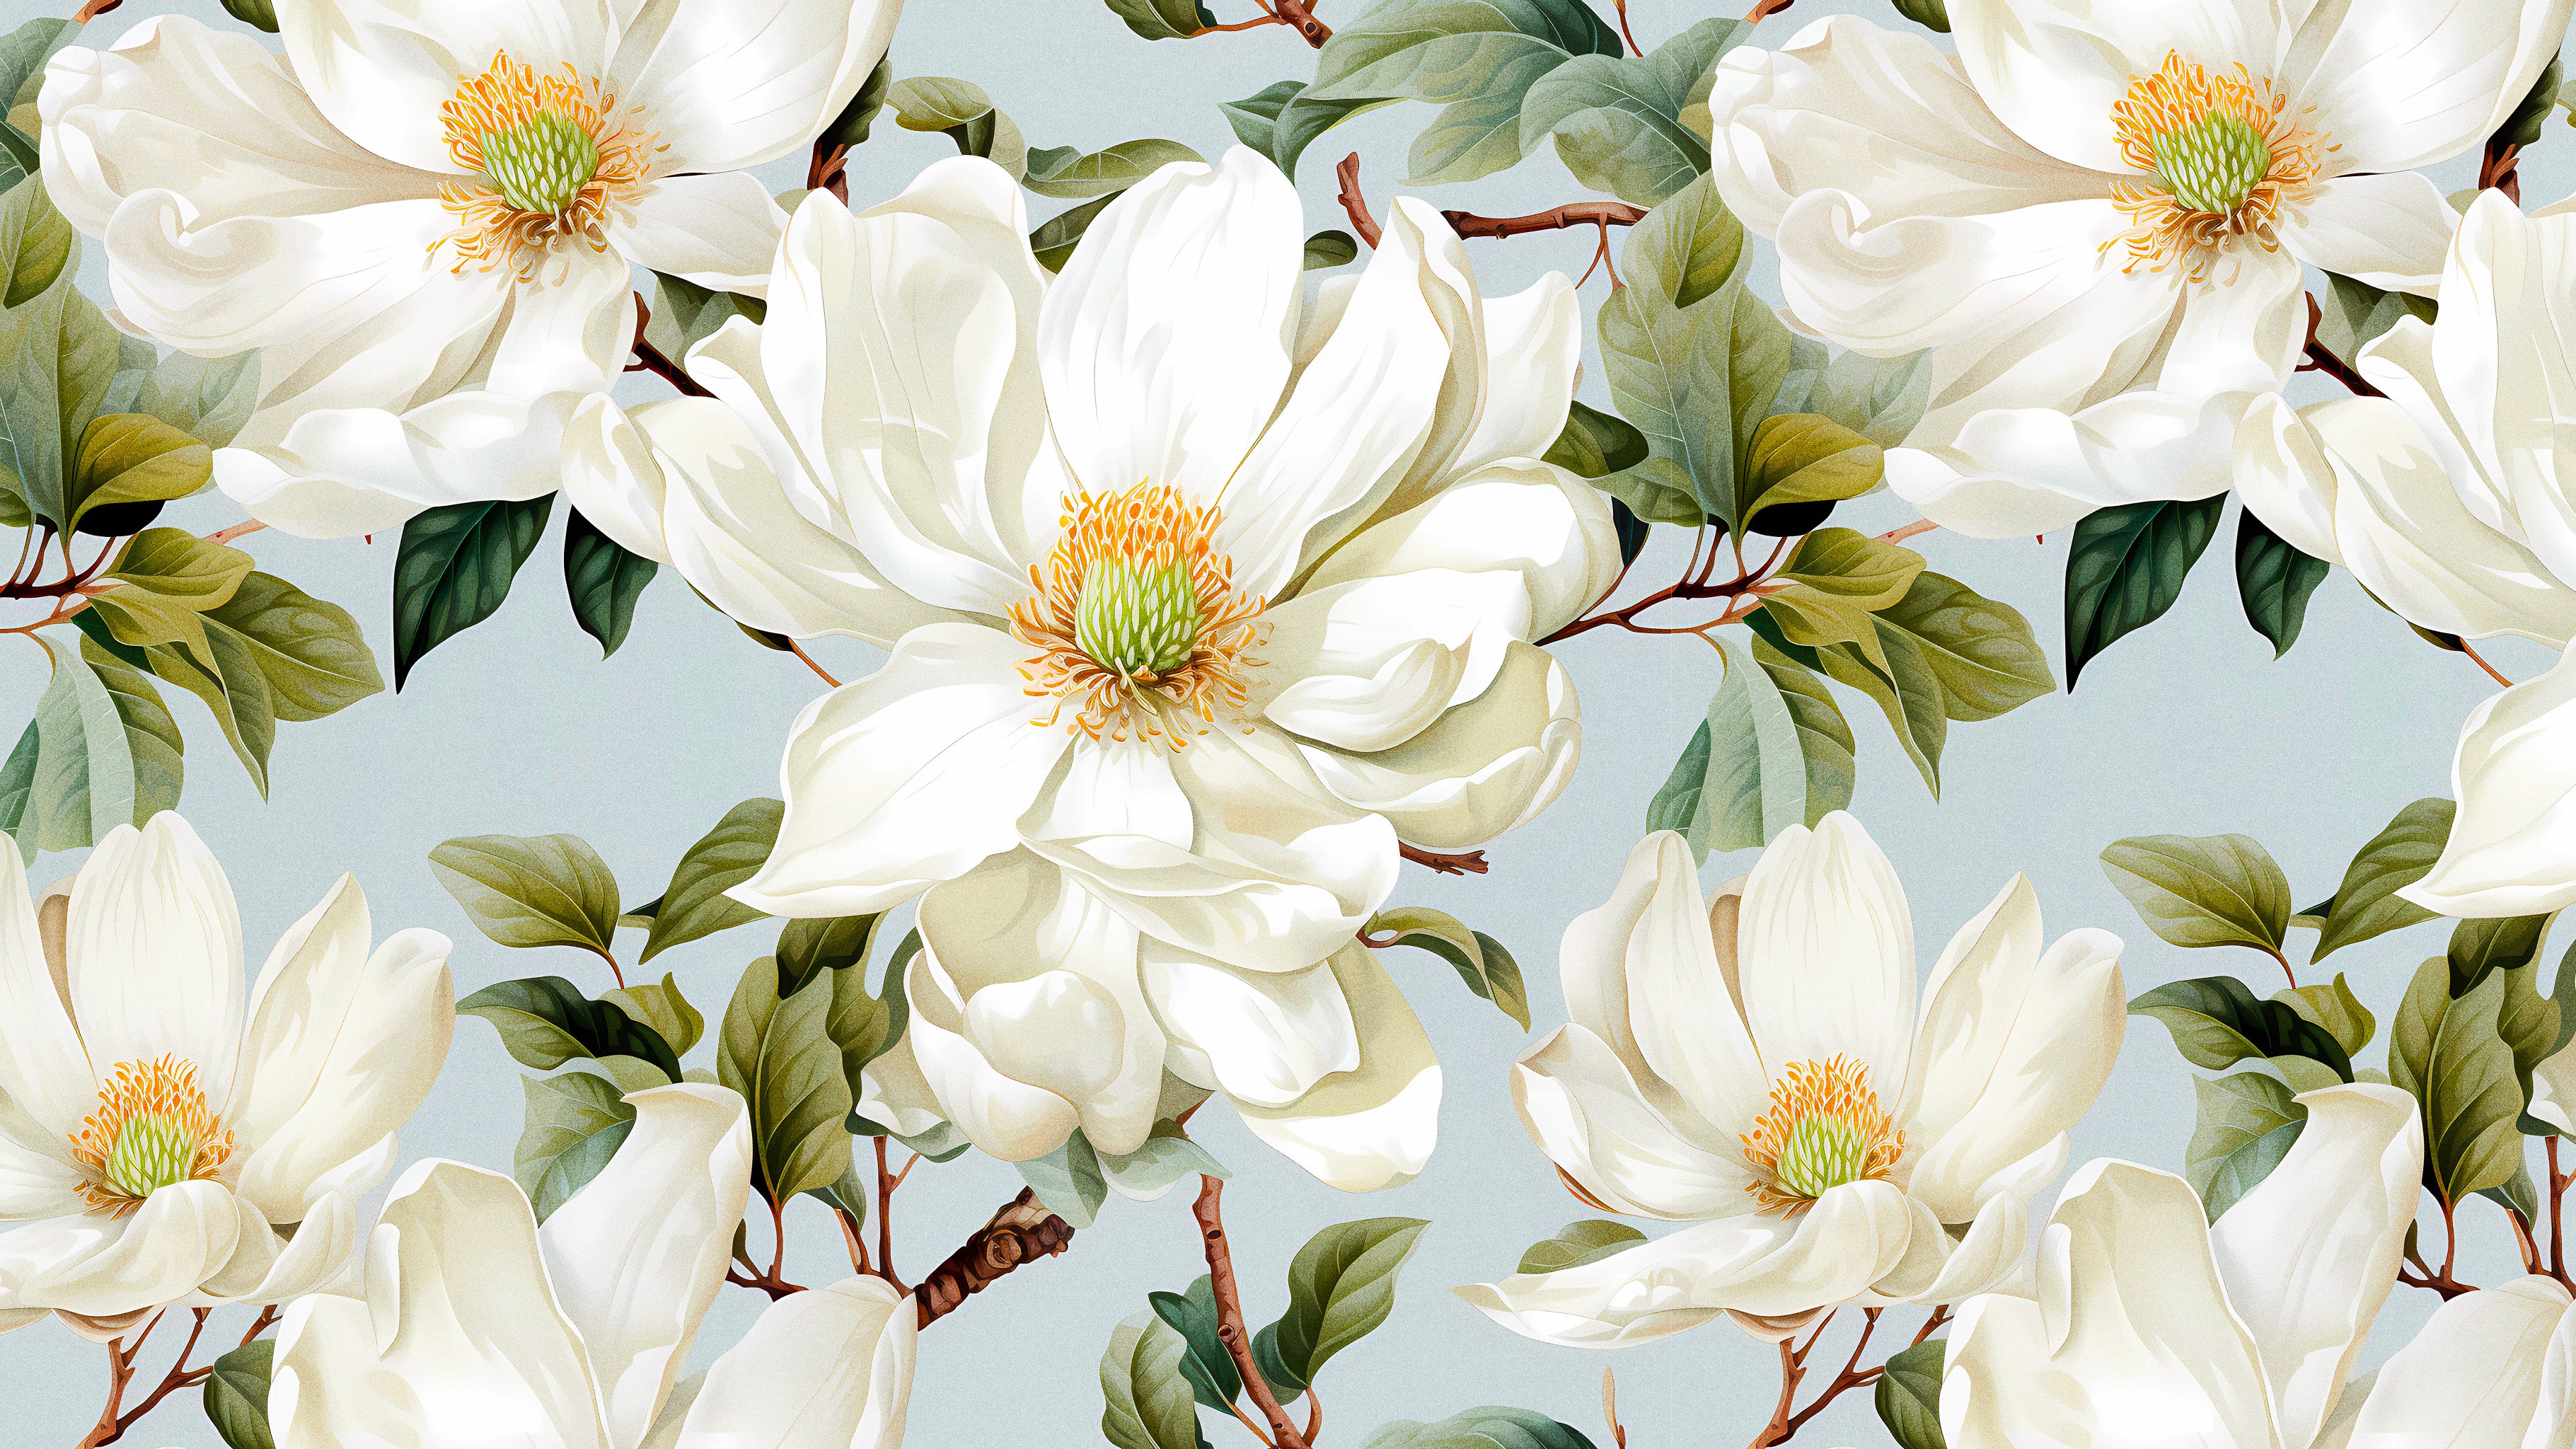 Magnolia Serenade by Studio Ten Design